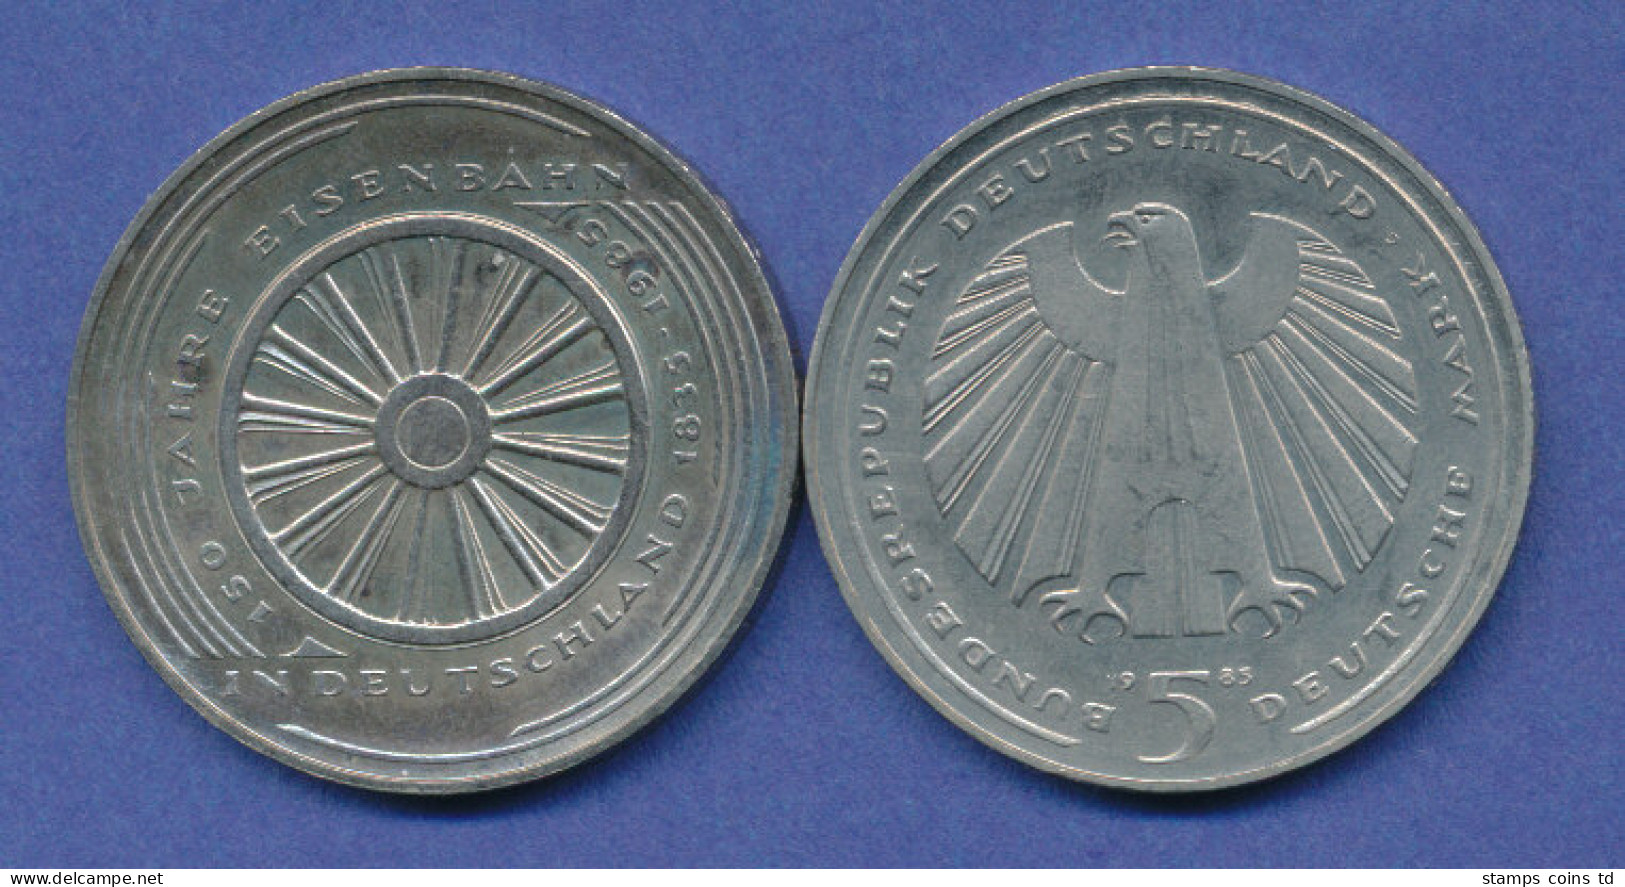 Bundesrepublik 5DM Gedenkmünze 1985, 150 Jahre Deutsche Eisenbahnen - 5 Mark